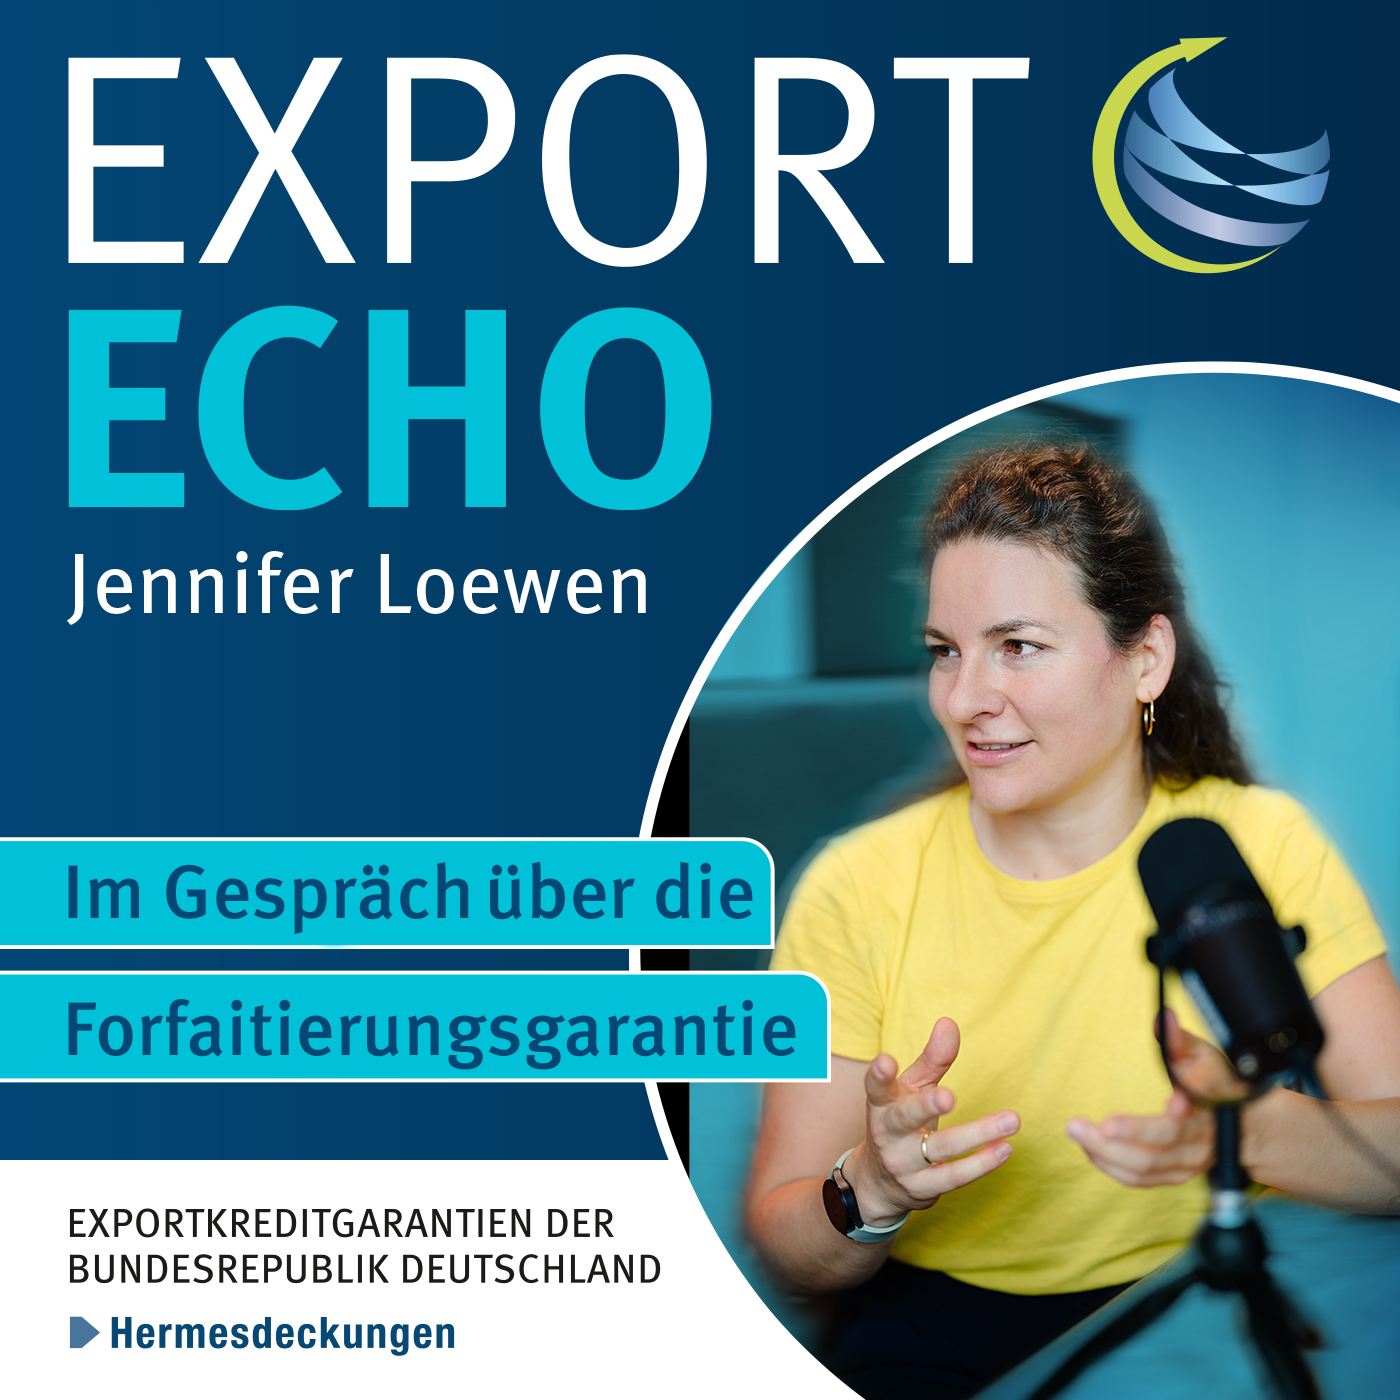 Teaserbild zum Export Echo, dem Podcast zu den Exportkreditgarantien des Bundes